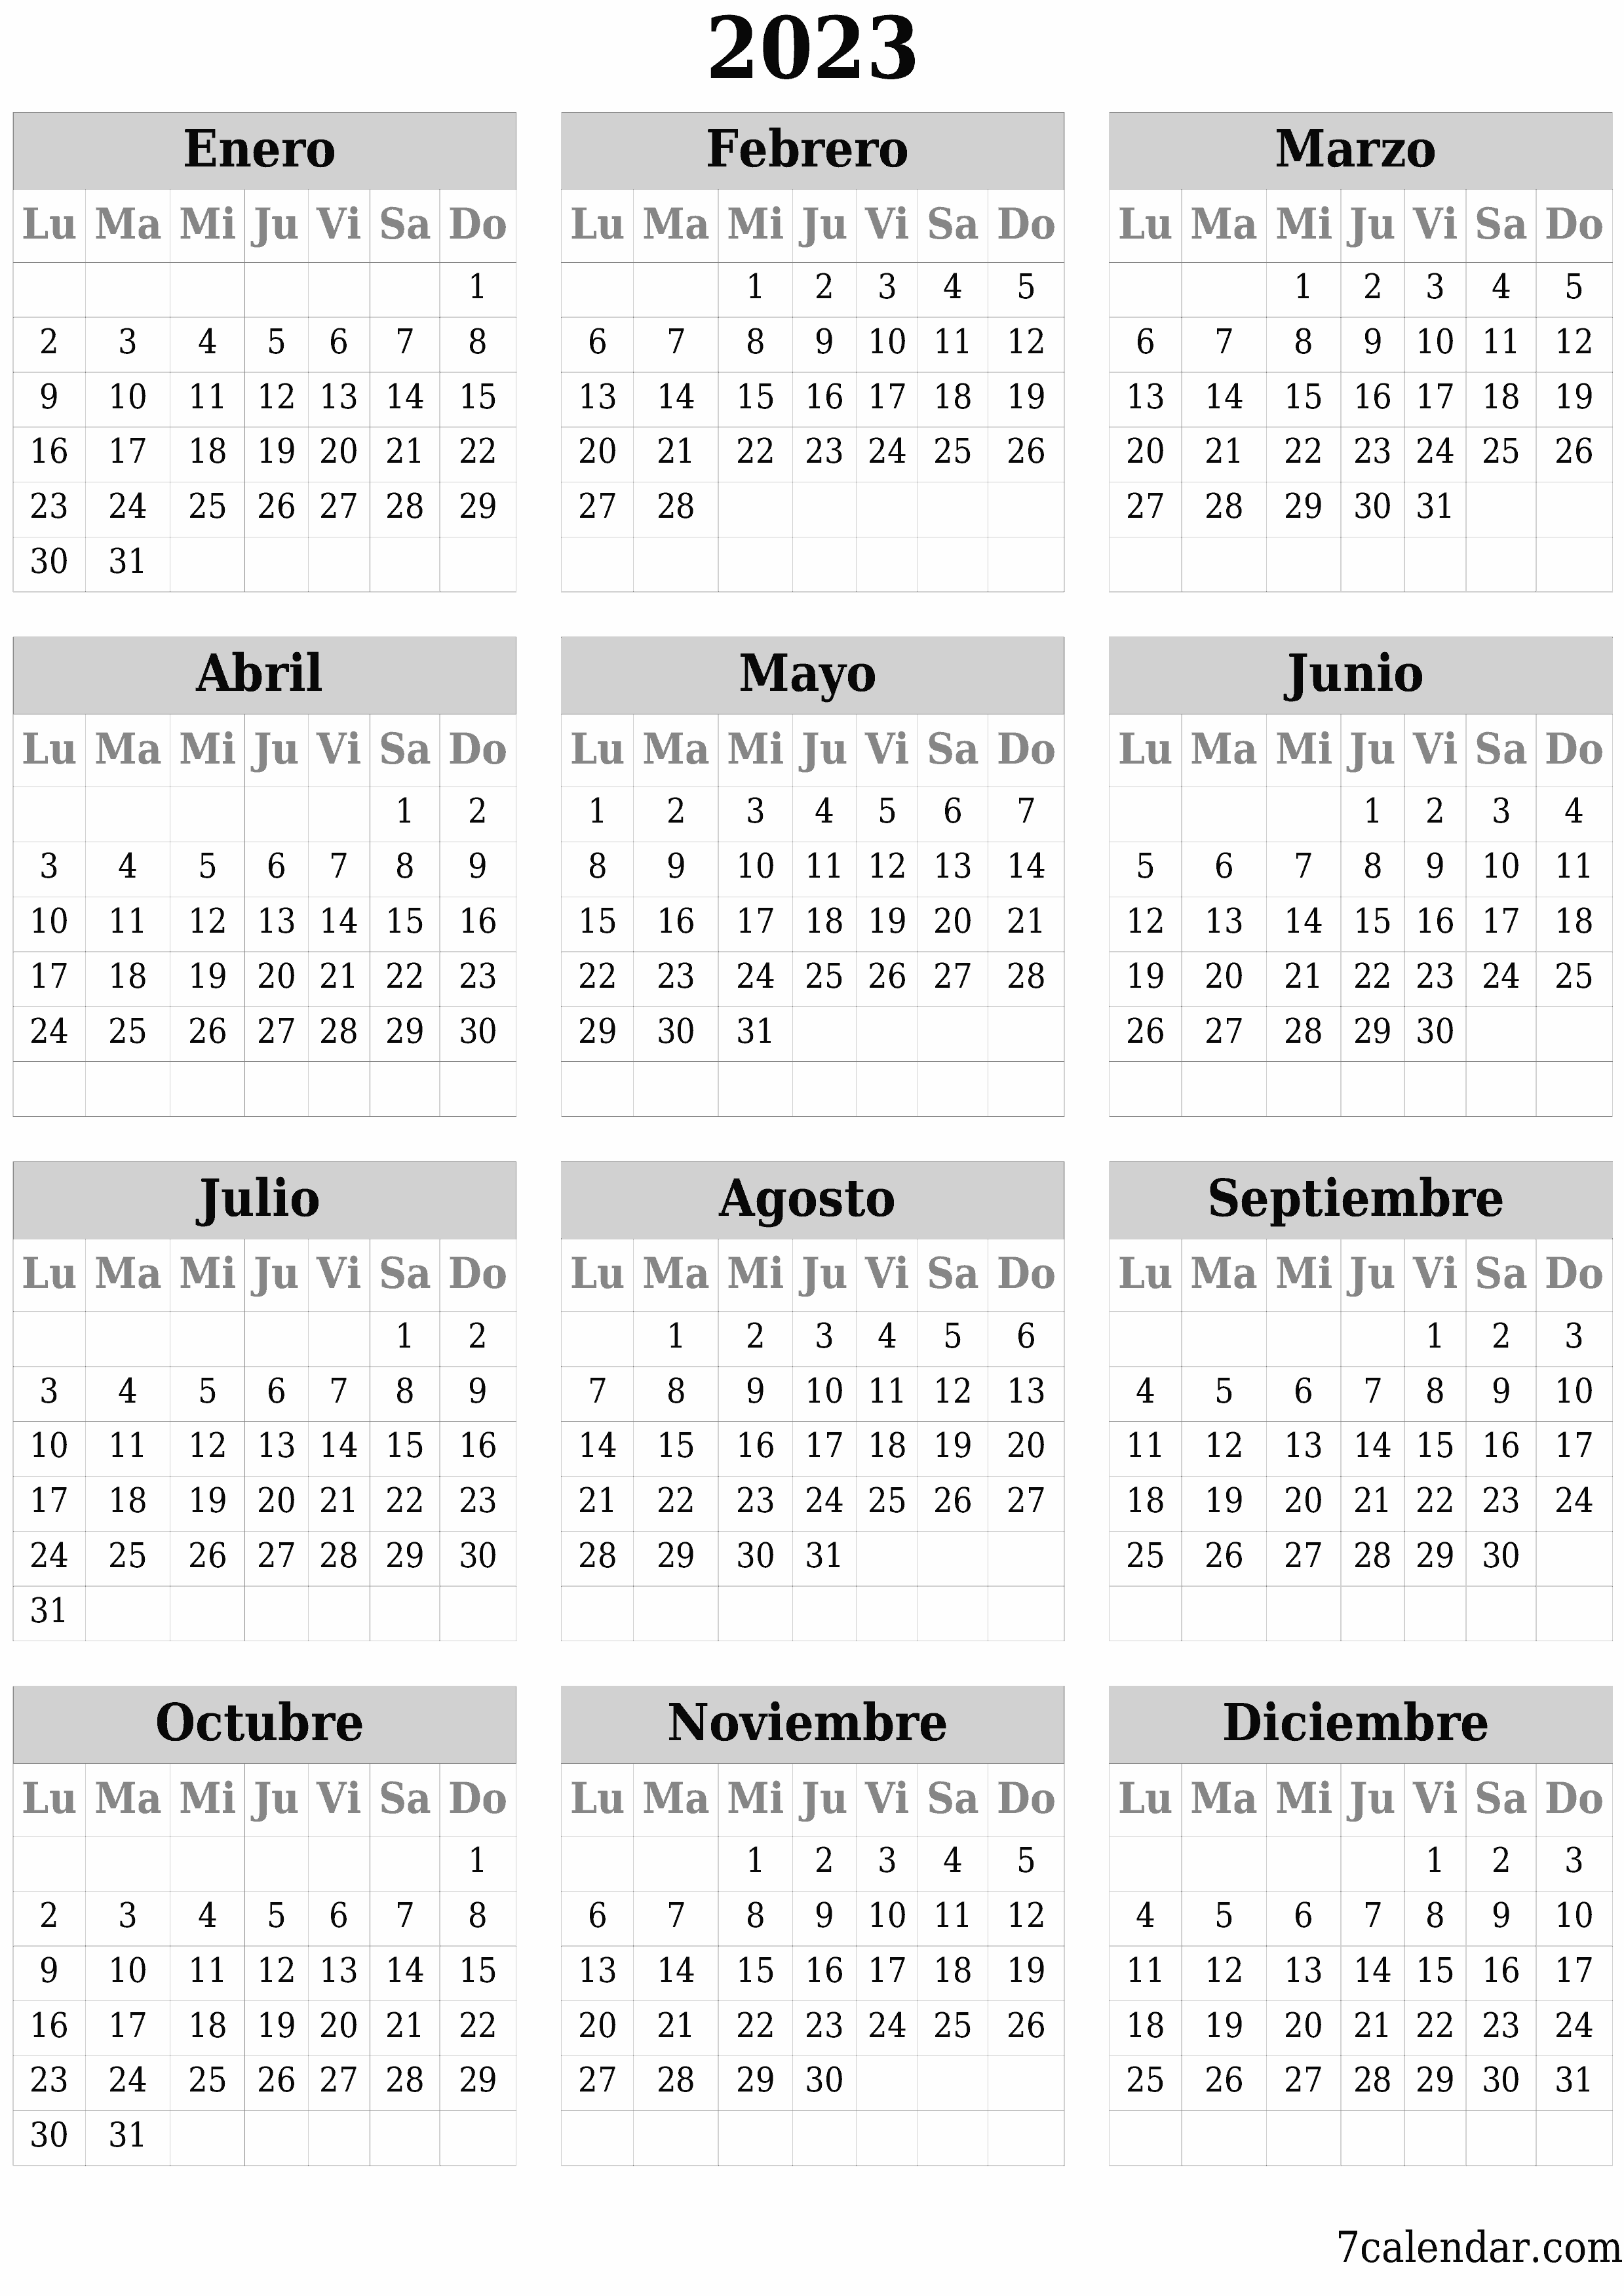 Calendario 2023 En Word Calendarios y planificadores imprimibles Enero 2023 A4, A3 a PDF y PNG -  7calendar